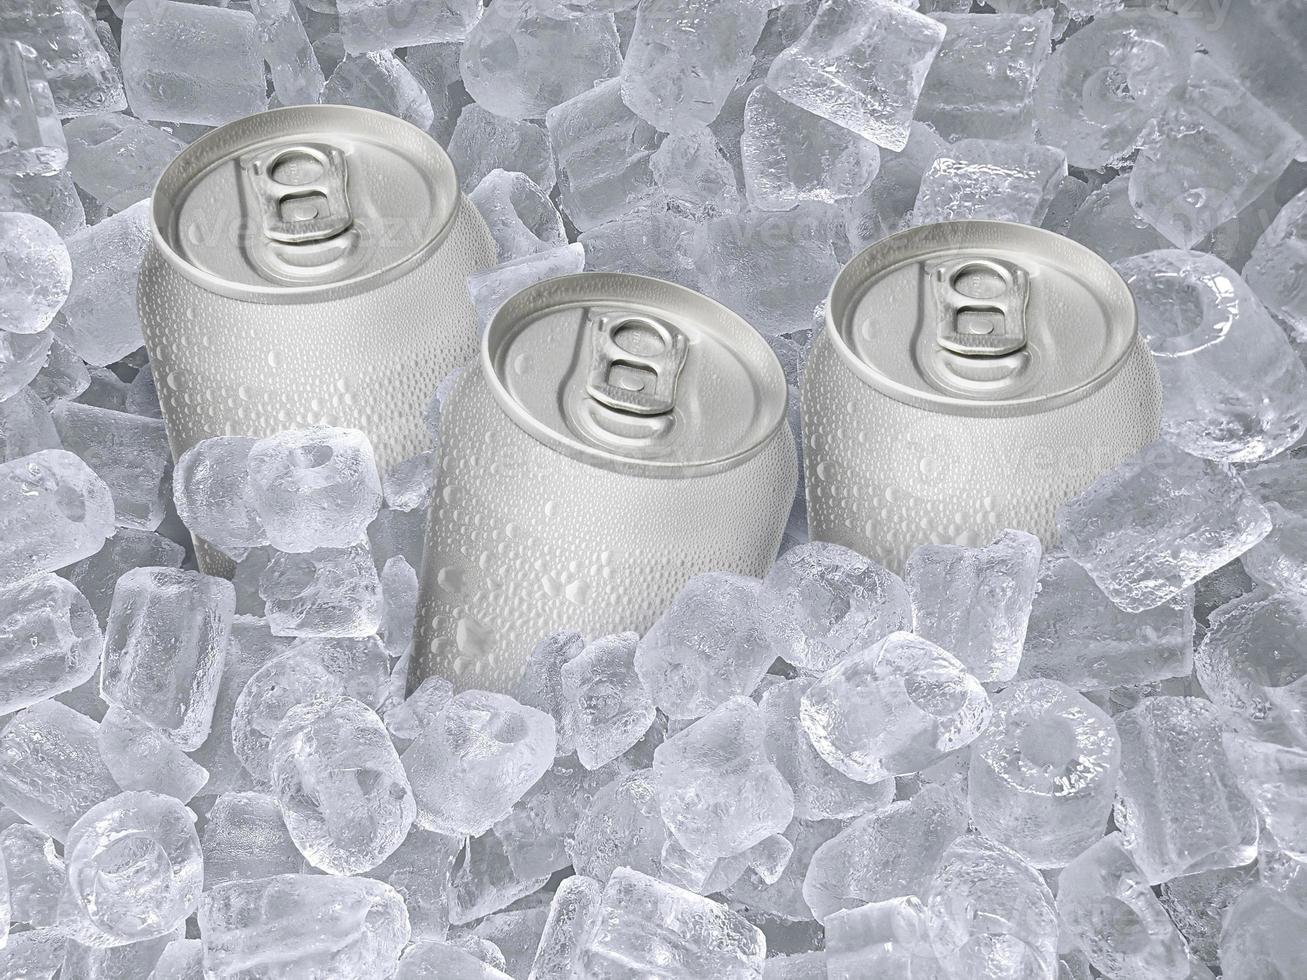 blikje koude drank, ijsblokjes van sappig. zomers verfrissend drankje foto